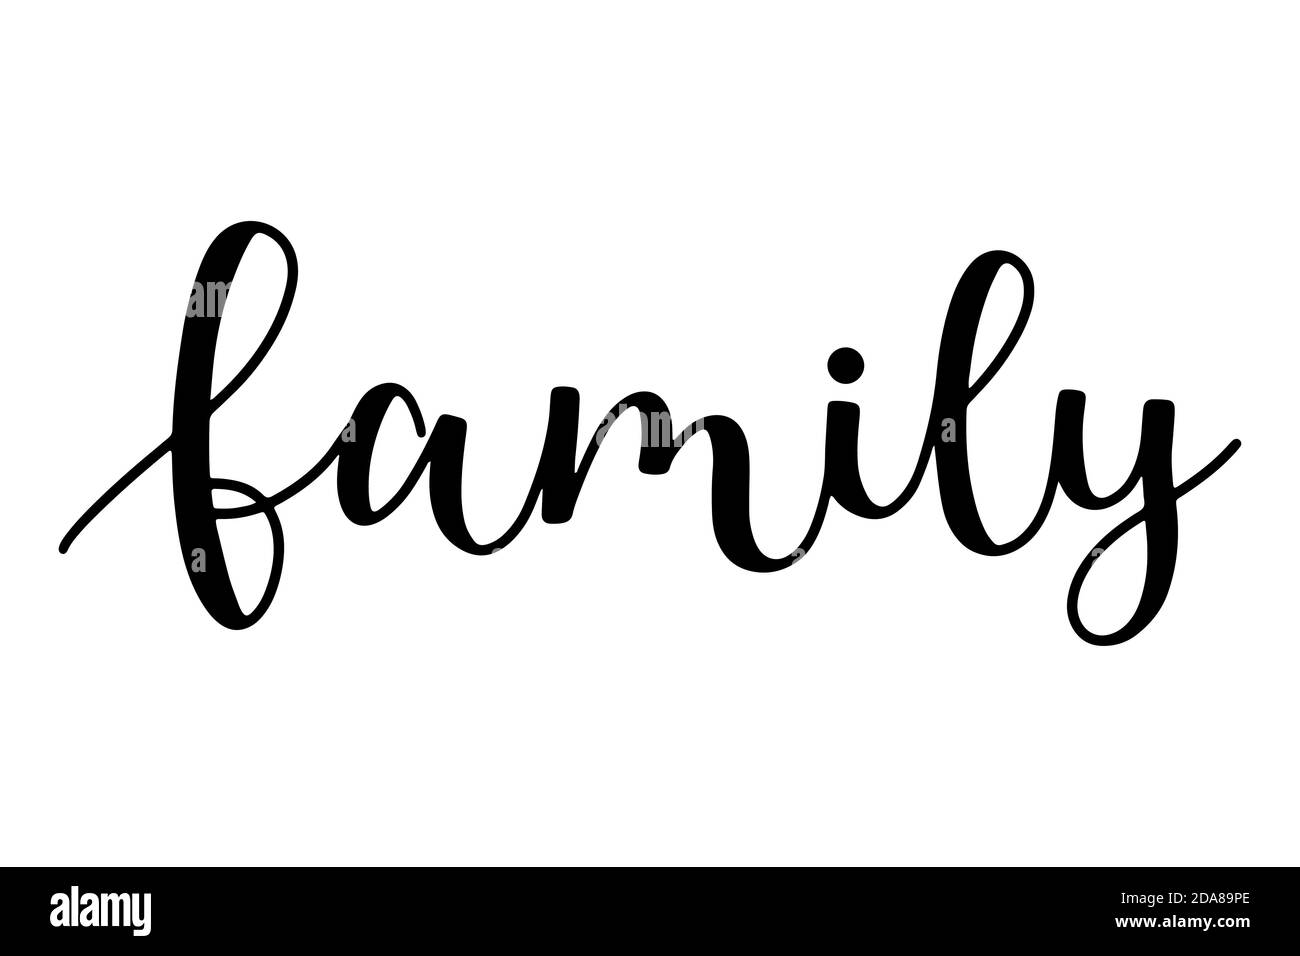 Family word testo disegnato a mano scritta vettoriale illustrazione isolata su sfondo bianco. Calligrafia a pennello per la stampa o la progettazione. Illustrazione Vettoriale